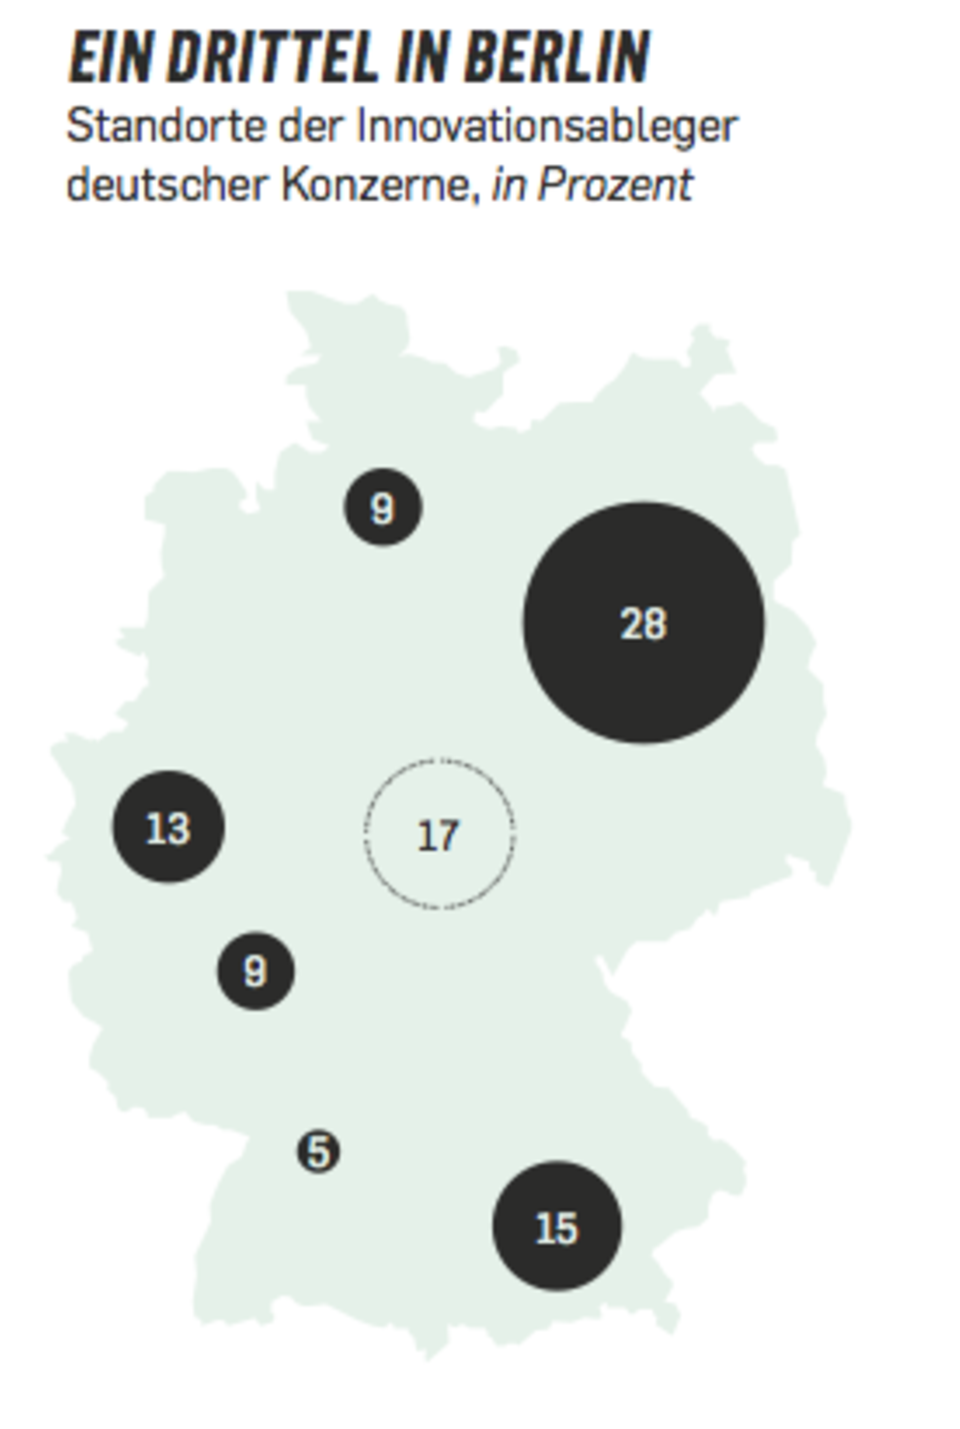 Berlin ist die wichtigste Basis für Digitallabore und Acceleratoren. Es folgen München, die Region Rhein-Ruhr, Hamburg, Frankfurt und Stuttgart. Ein Rest von 17 Prozent ist übers Land verteilt.